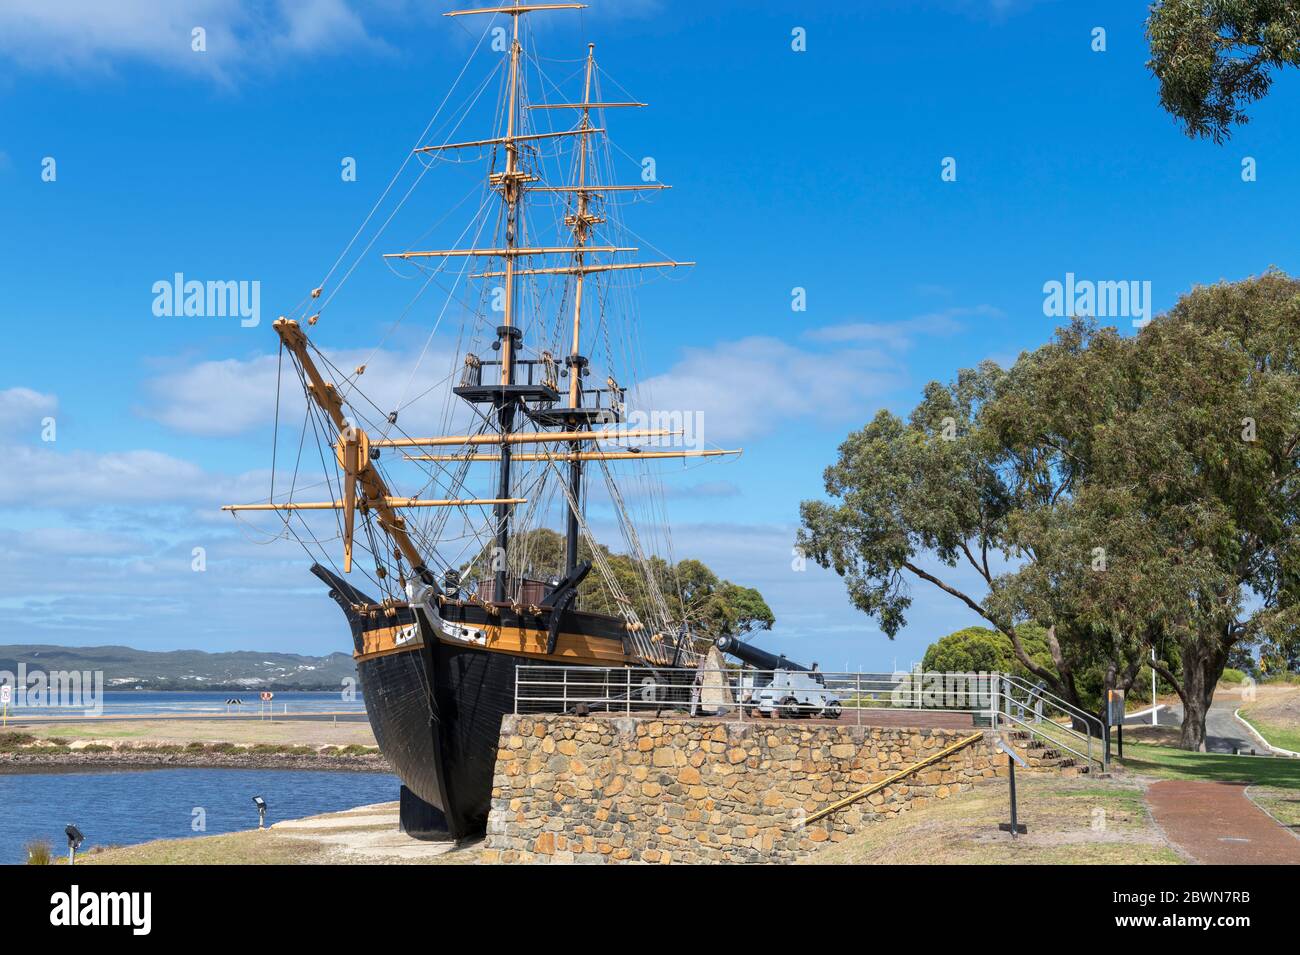 Réplique de la brig 'Amity', qui a amené les premiers Européens en Australie occidentale en 1826, Albany, Australie occidentale, Australie Banque D'Images